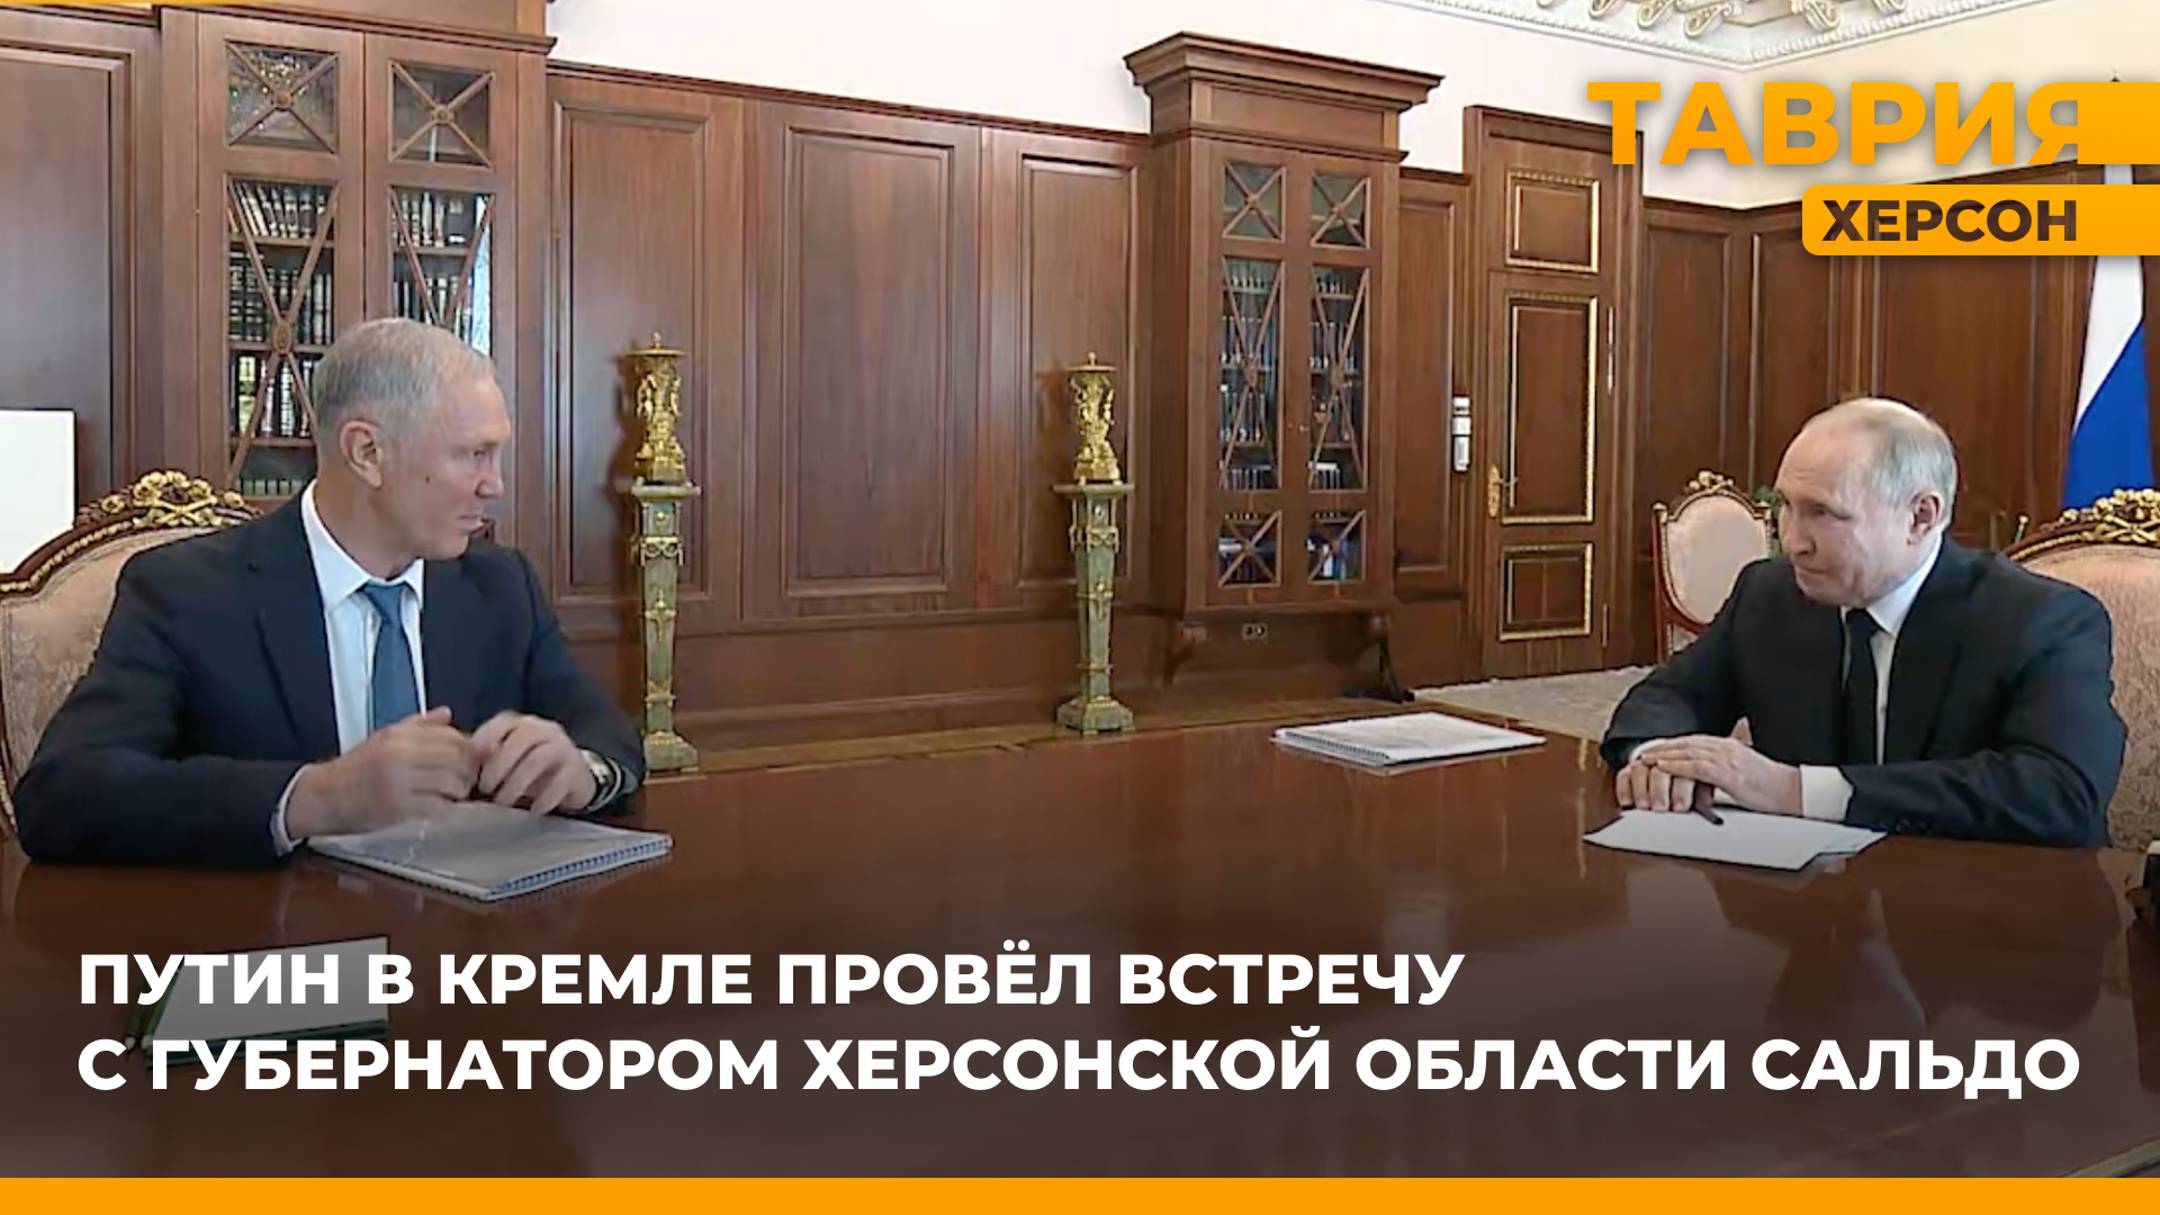 Владимир Путин провел встречу в Кремле с губернатором Херсонской области Владимиром Сальдо